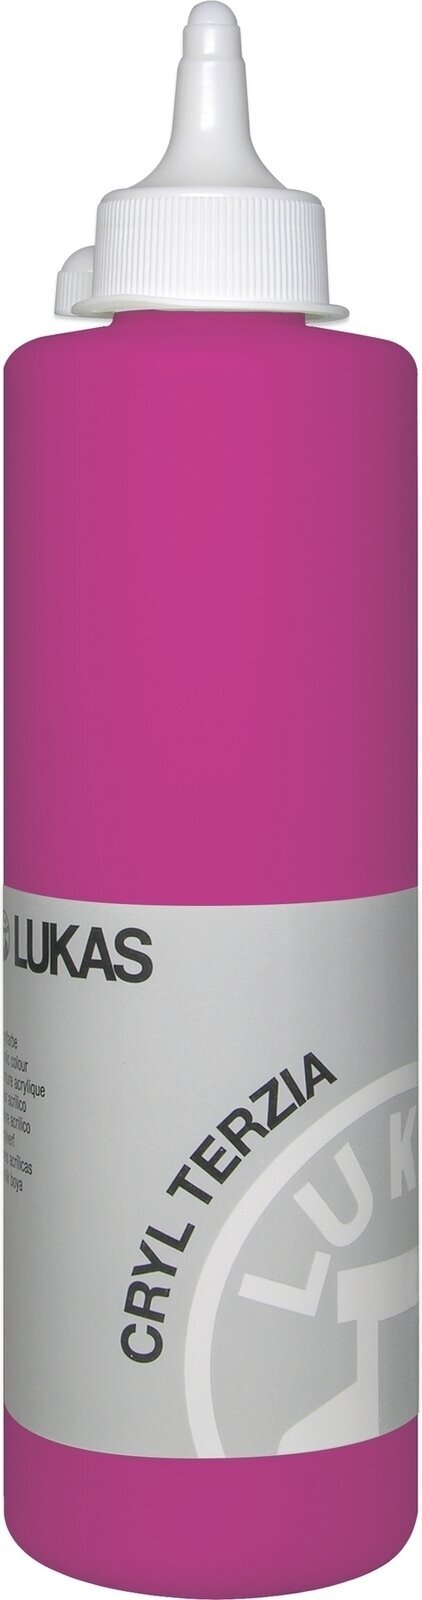 Akrylová farba Lukas Cryl Terzia Acrylic Paint Plastic Bottle Akrylová farba Primary Red 500 ml 1 ks